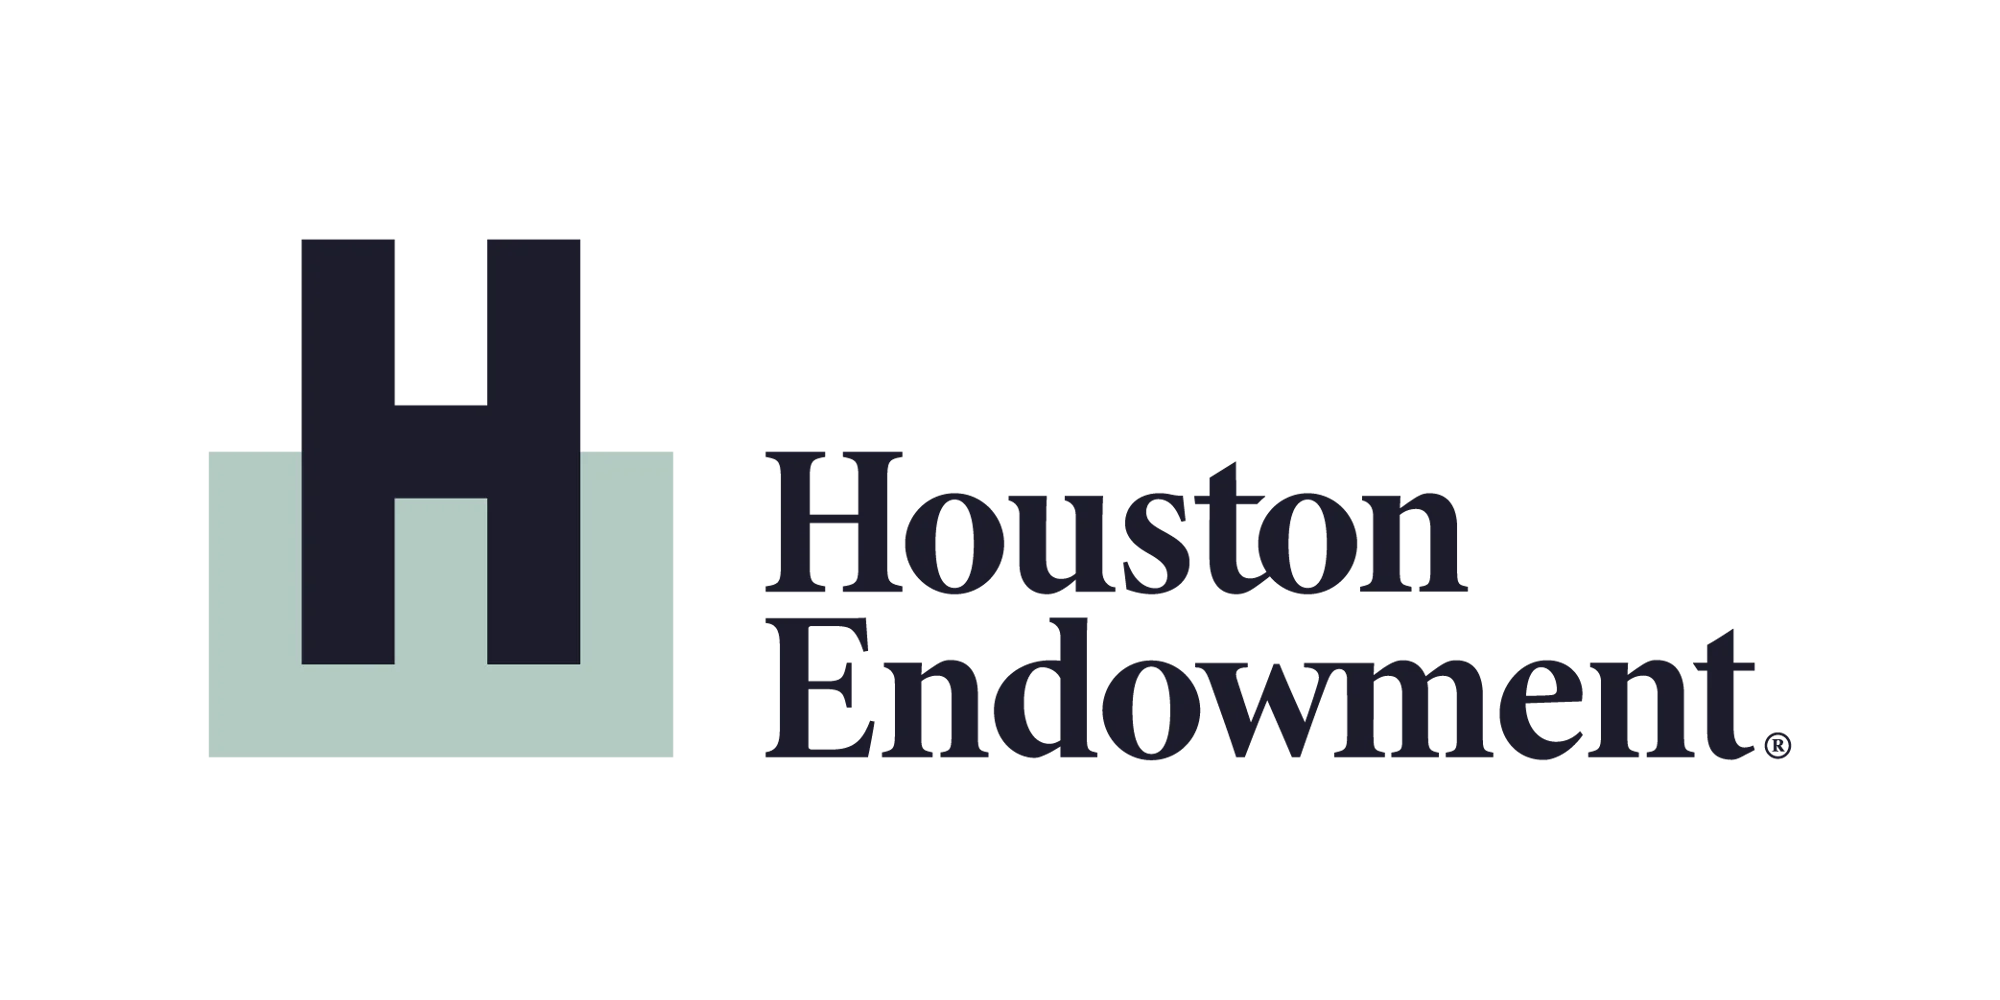 houston-endowment-logo